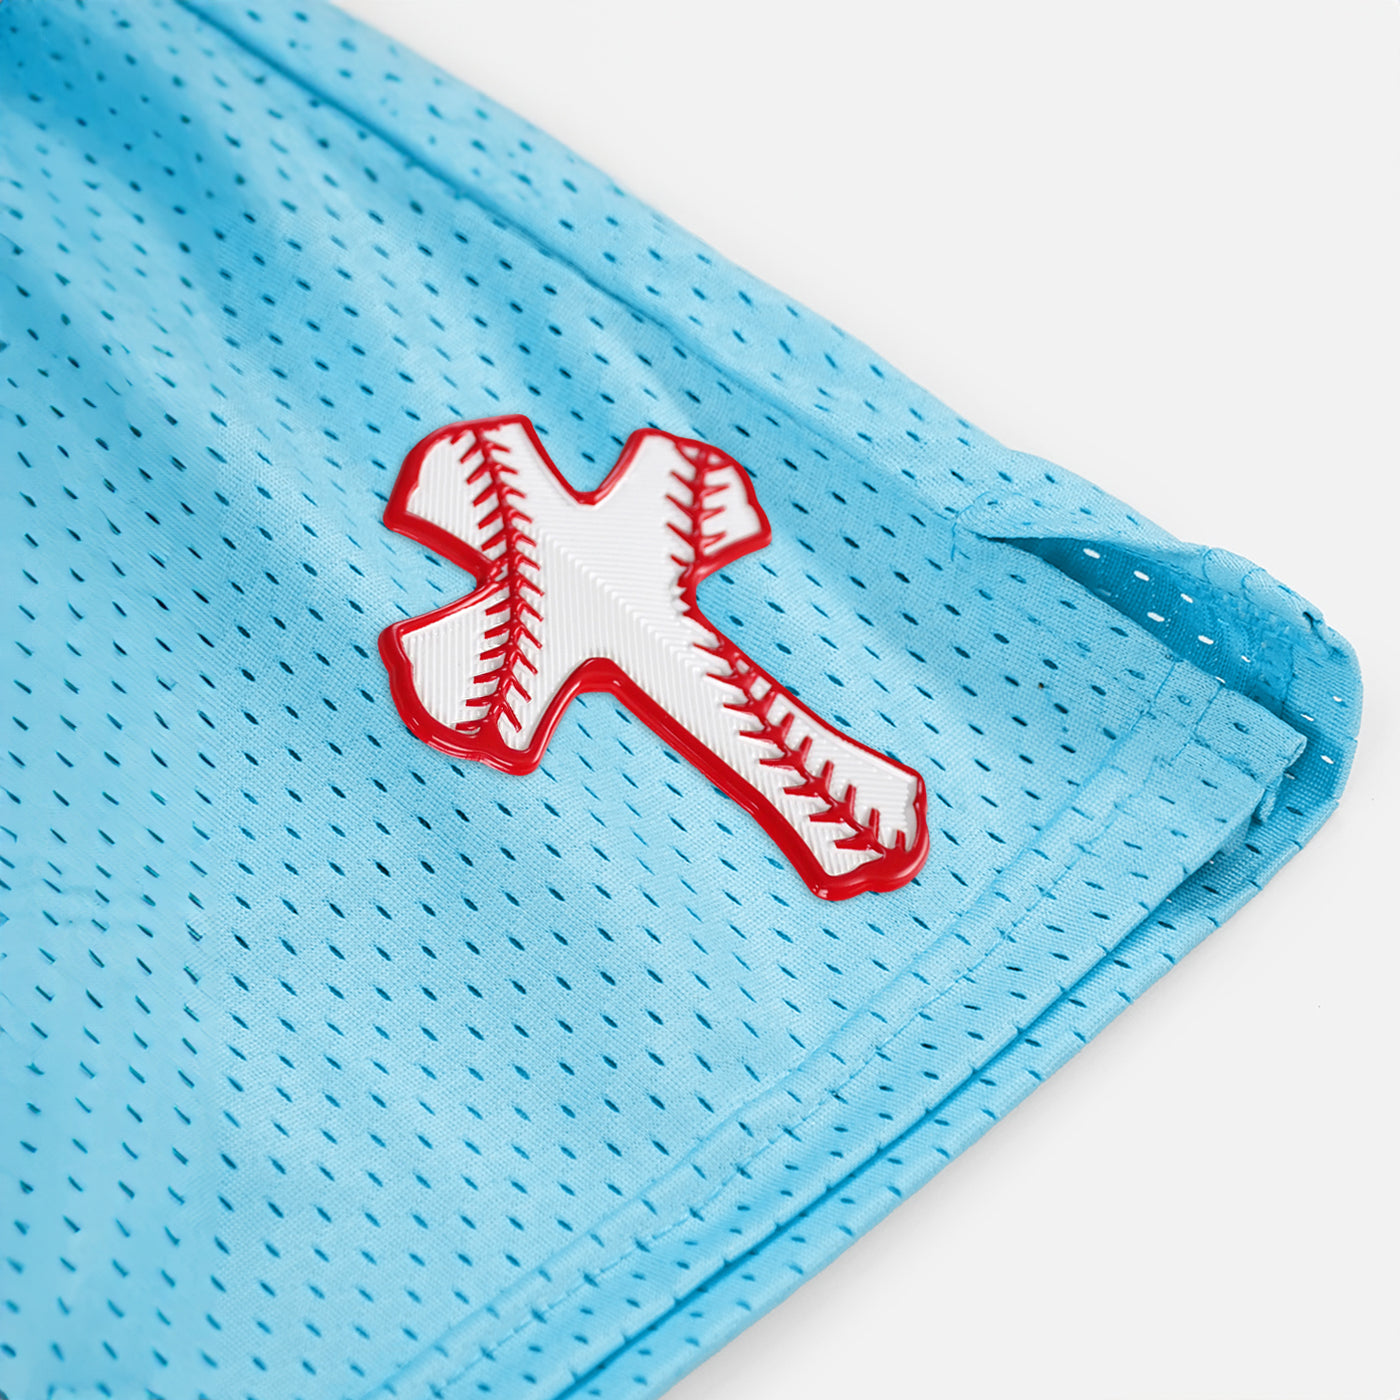 Baseball Cross Patch Shorts - 7"